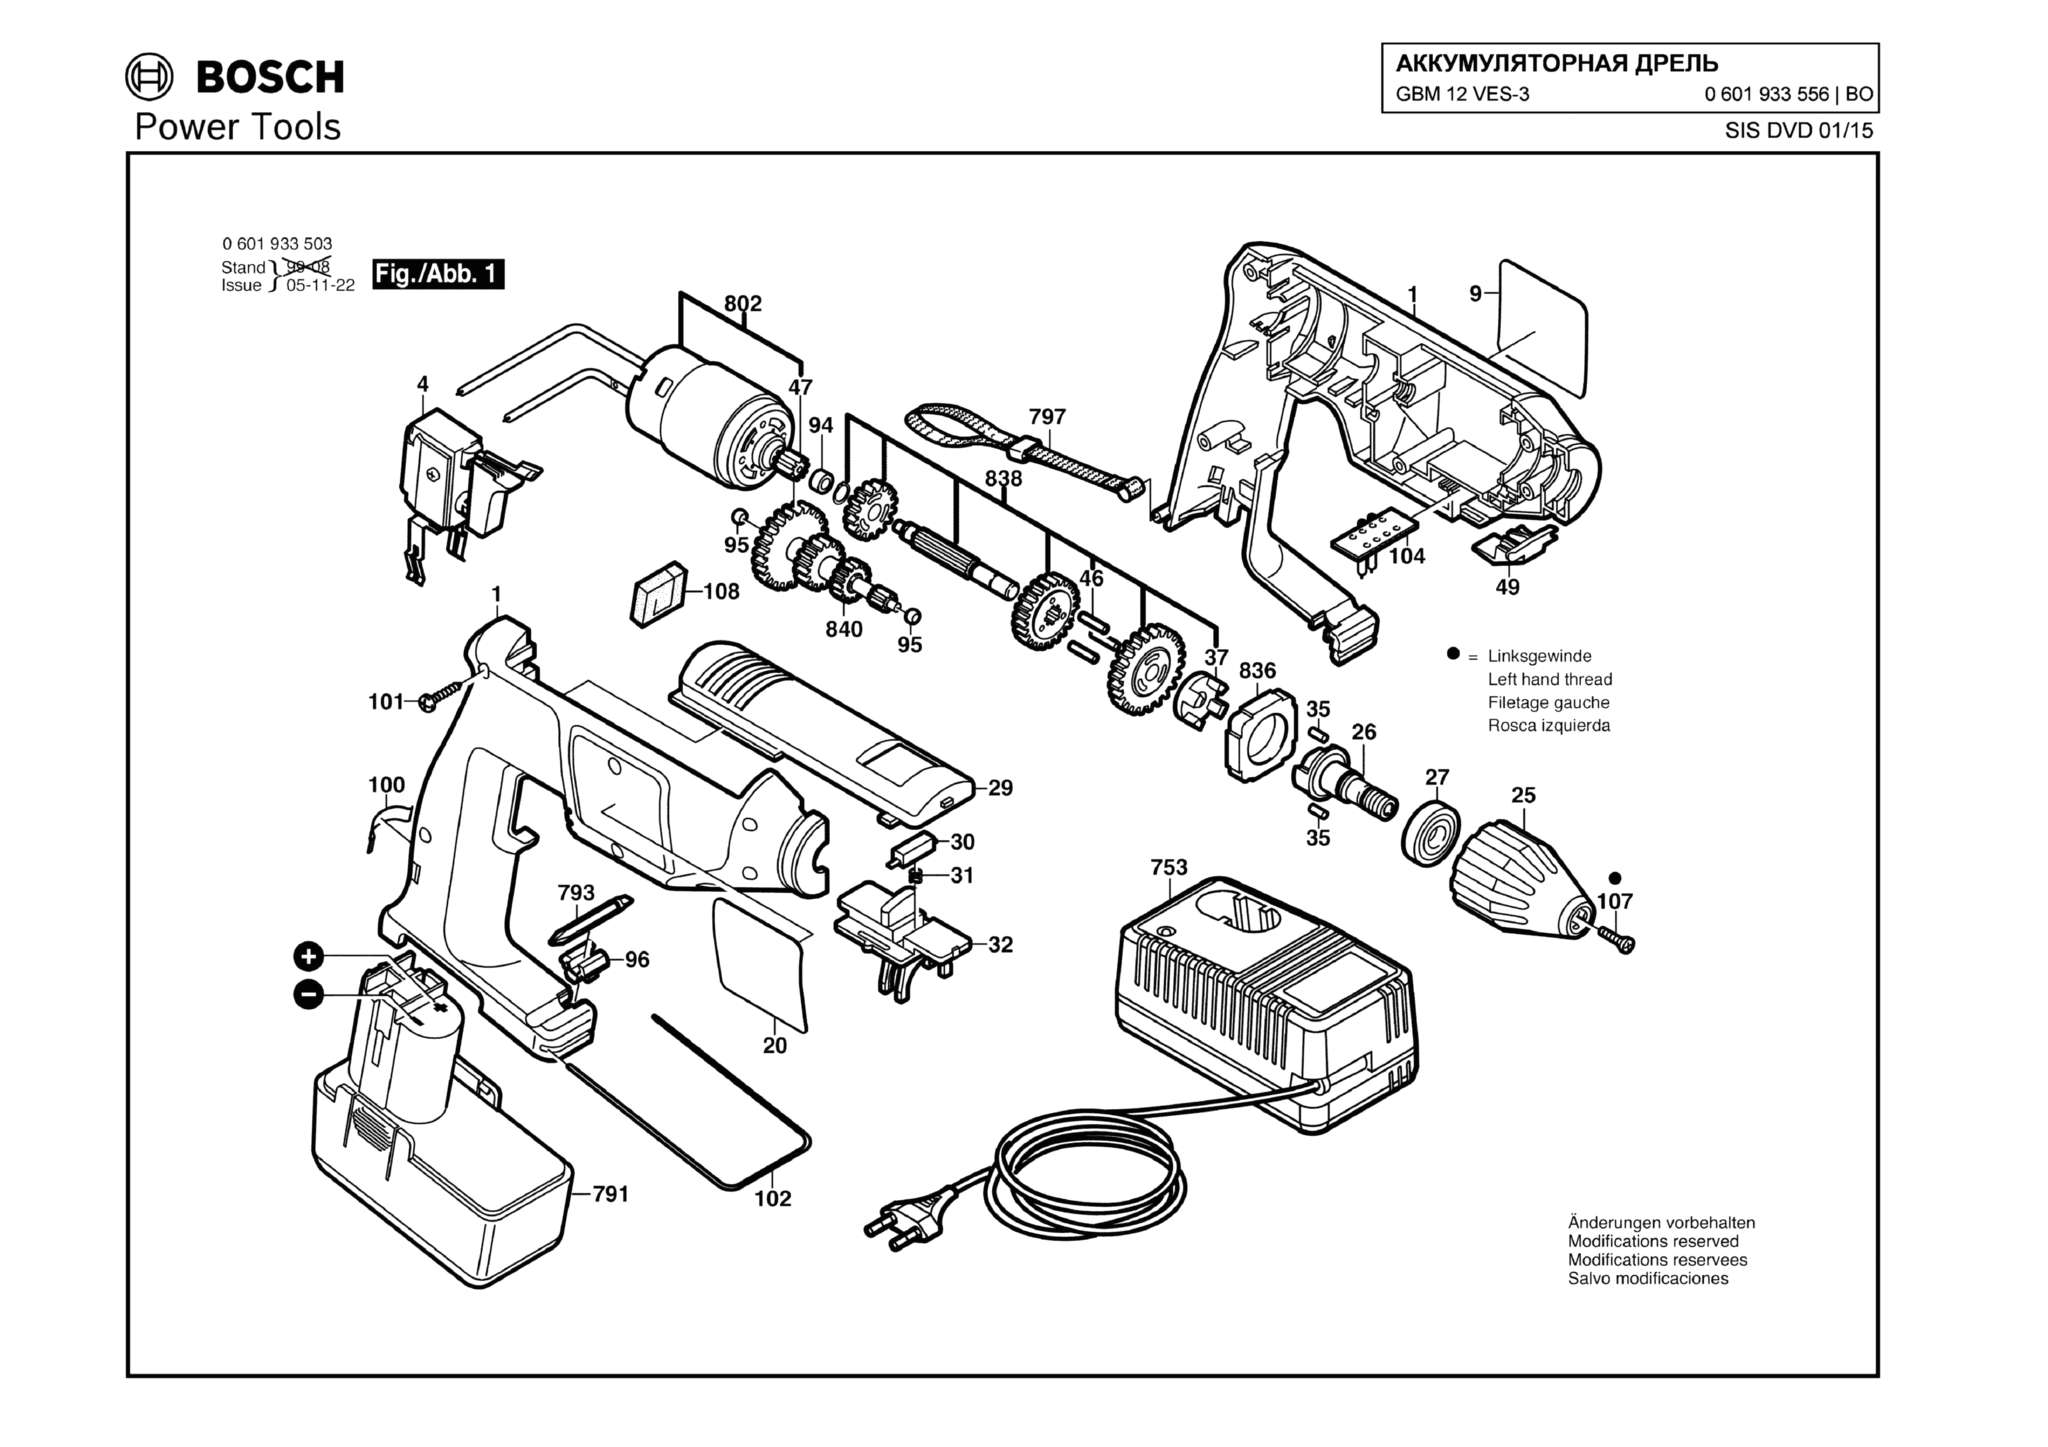 Запчасти, схема и деталировка Bosch GBM 12 VES-3 (ТИП 0601933556)